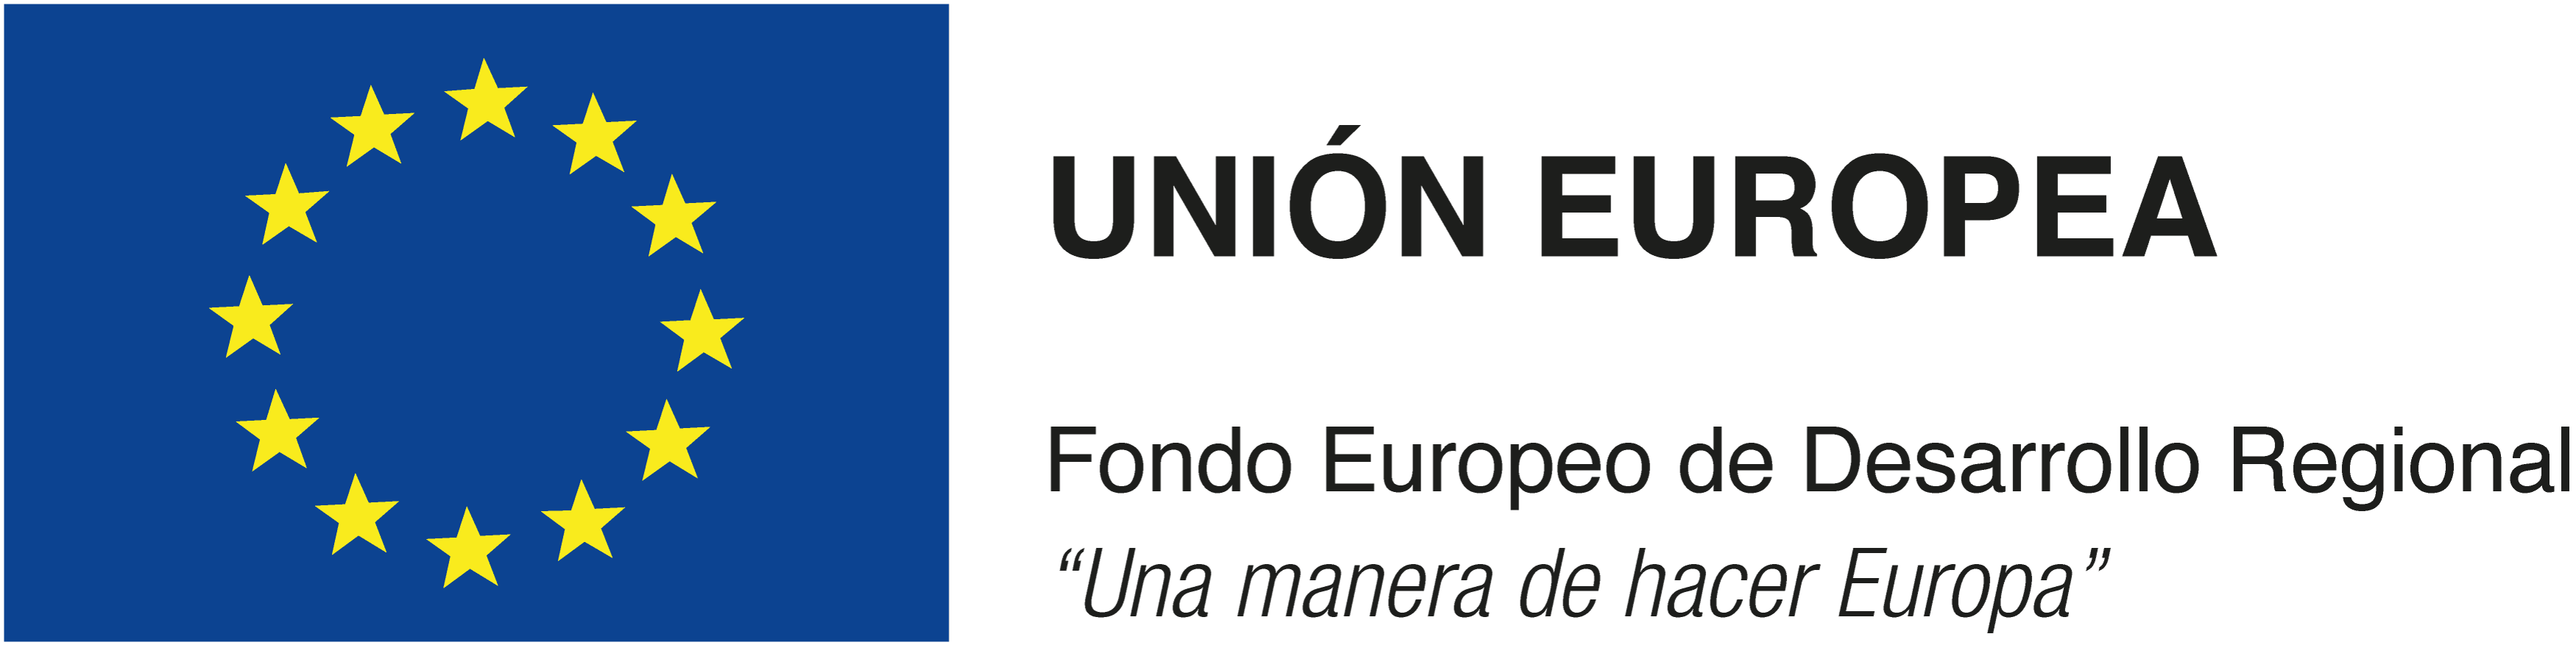 Fondo_europeo_desarrollo_regional